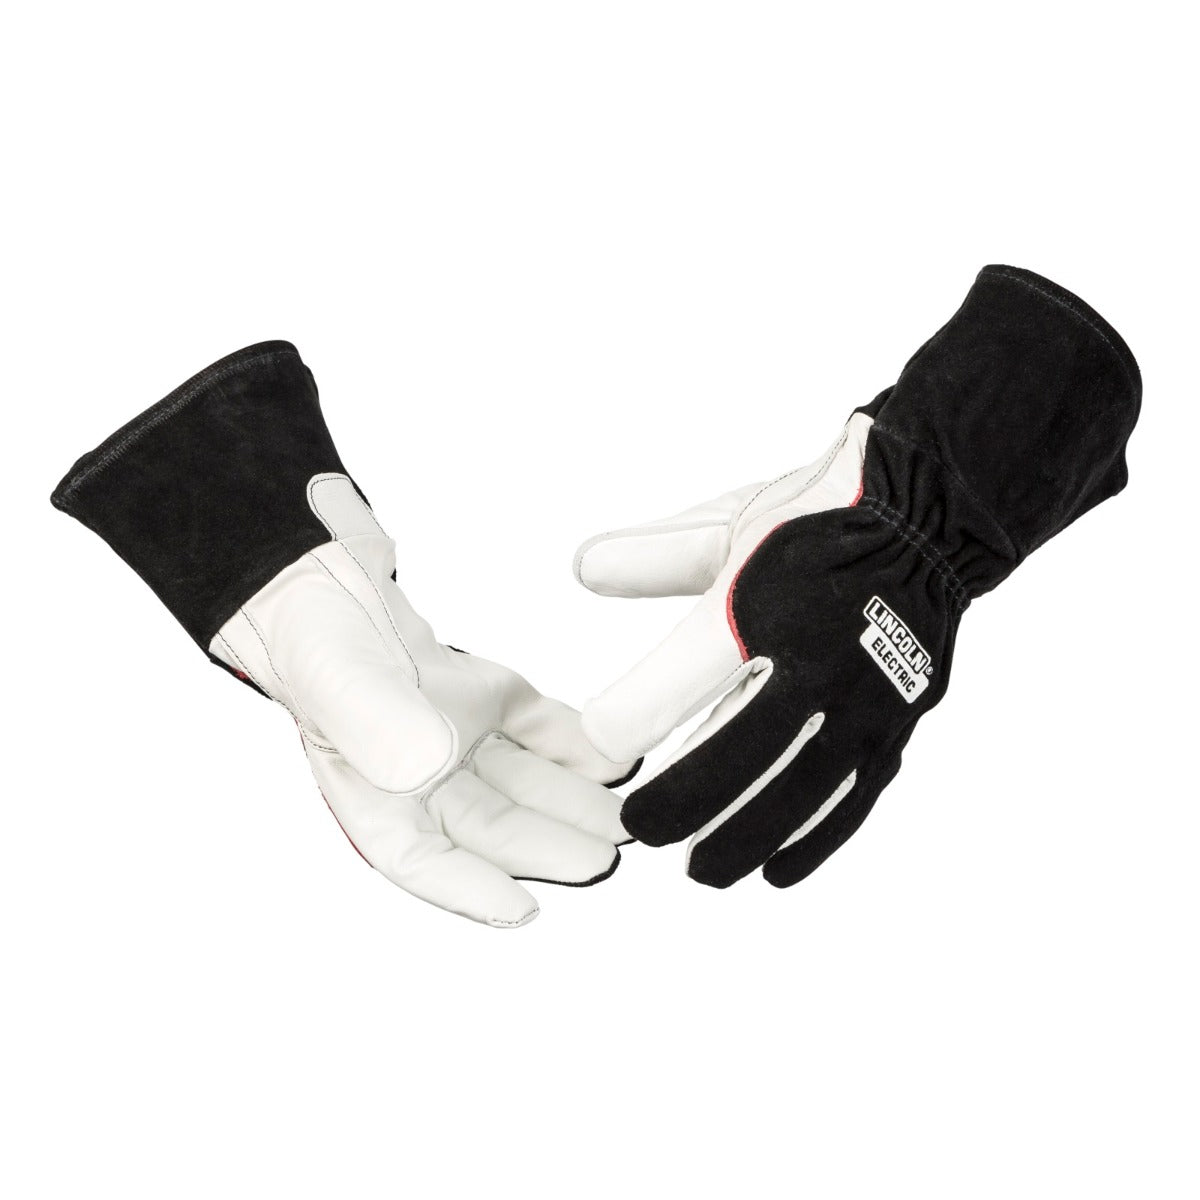 Lincoln DynaMIG Heavy Duty MIG Gloves (K3806)